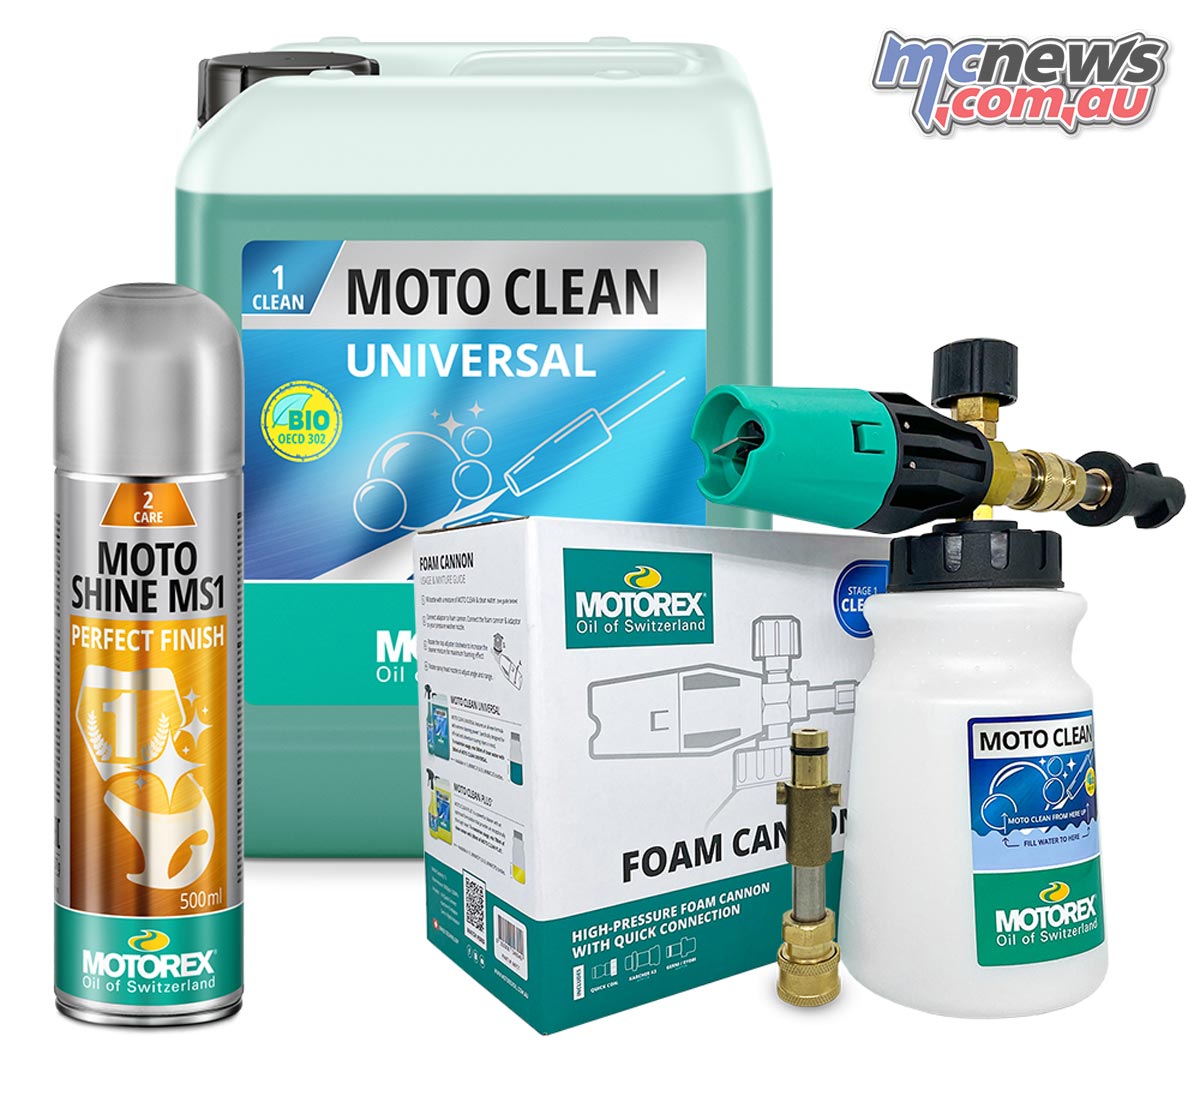 Motorex Moto Cleaning Kit - Motorcycle Cleaning Kit